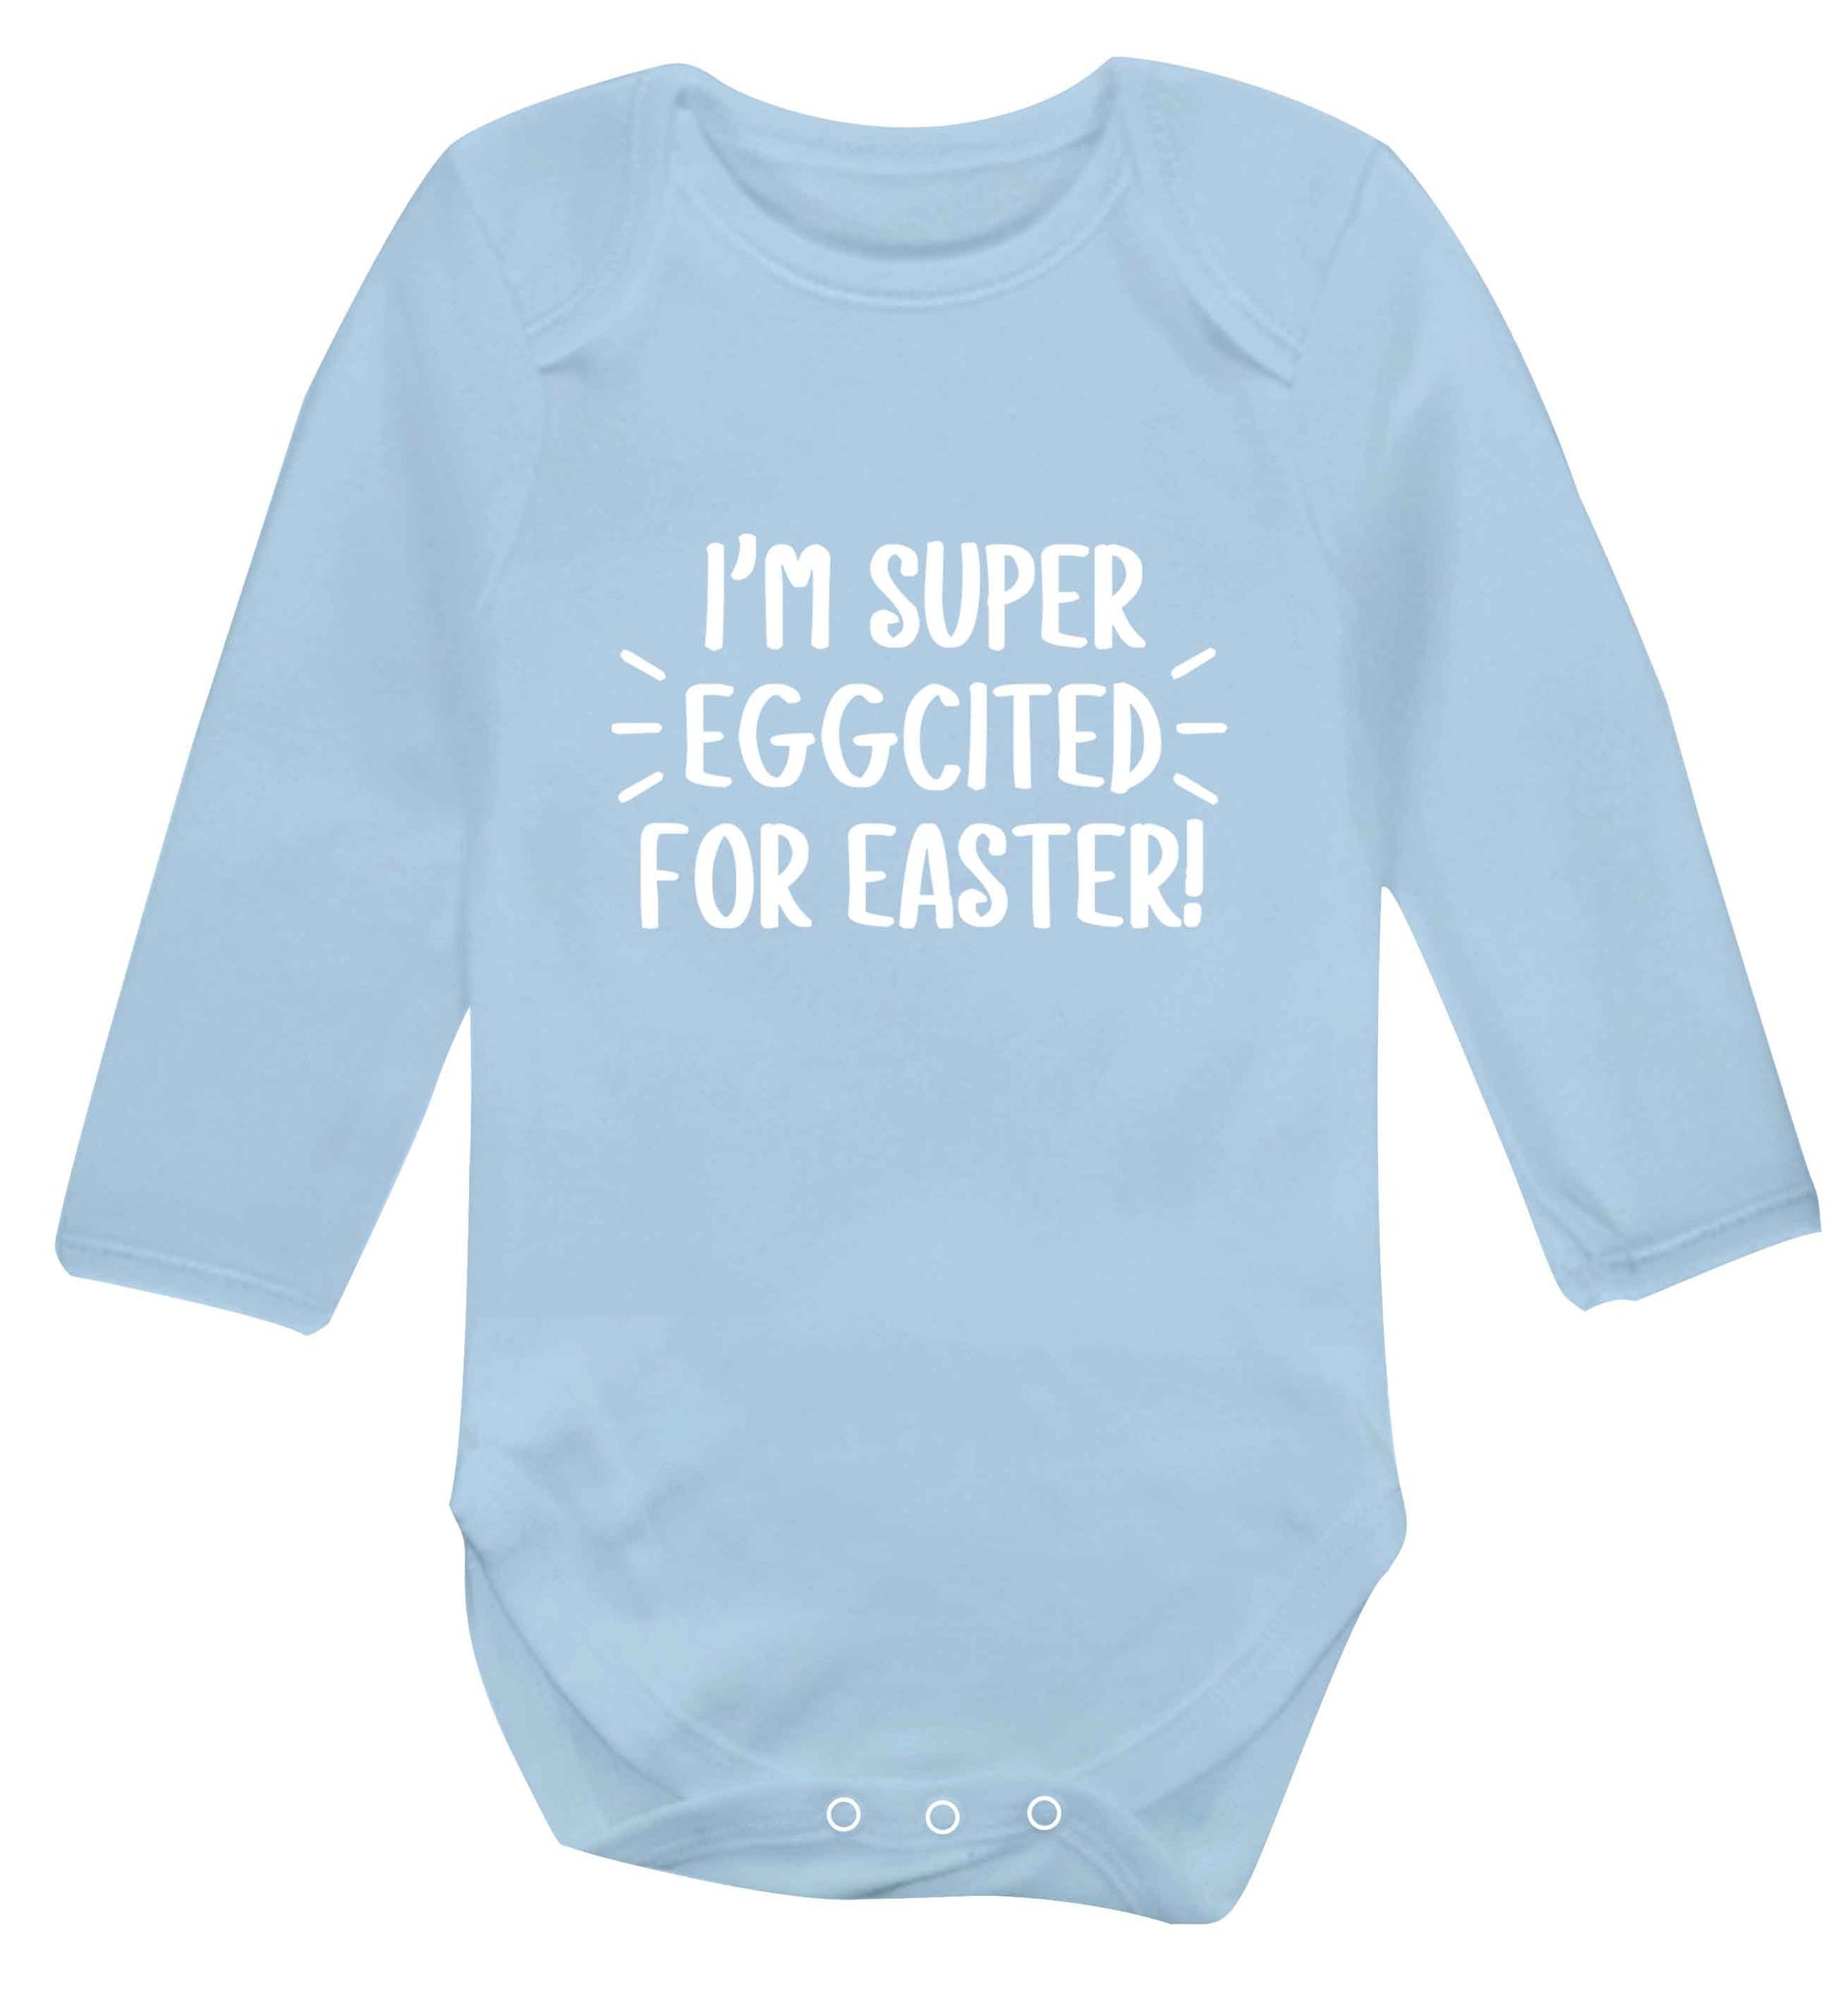 I'm super eggcited for Easter baby vest long sleeved pale blue 6-12 months